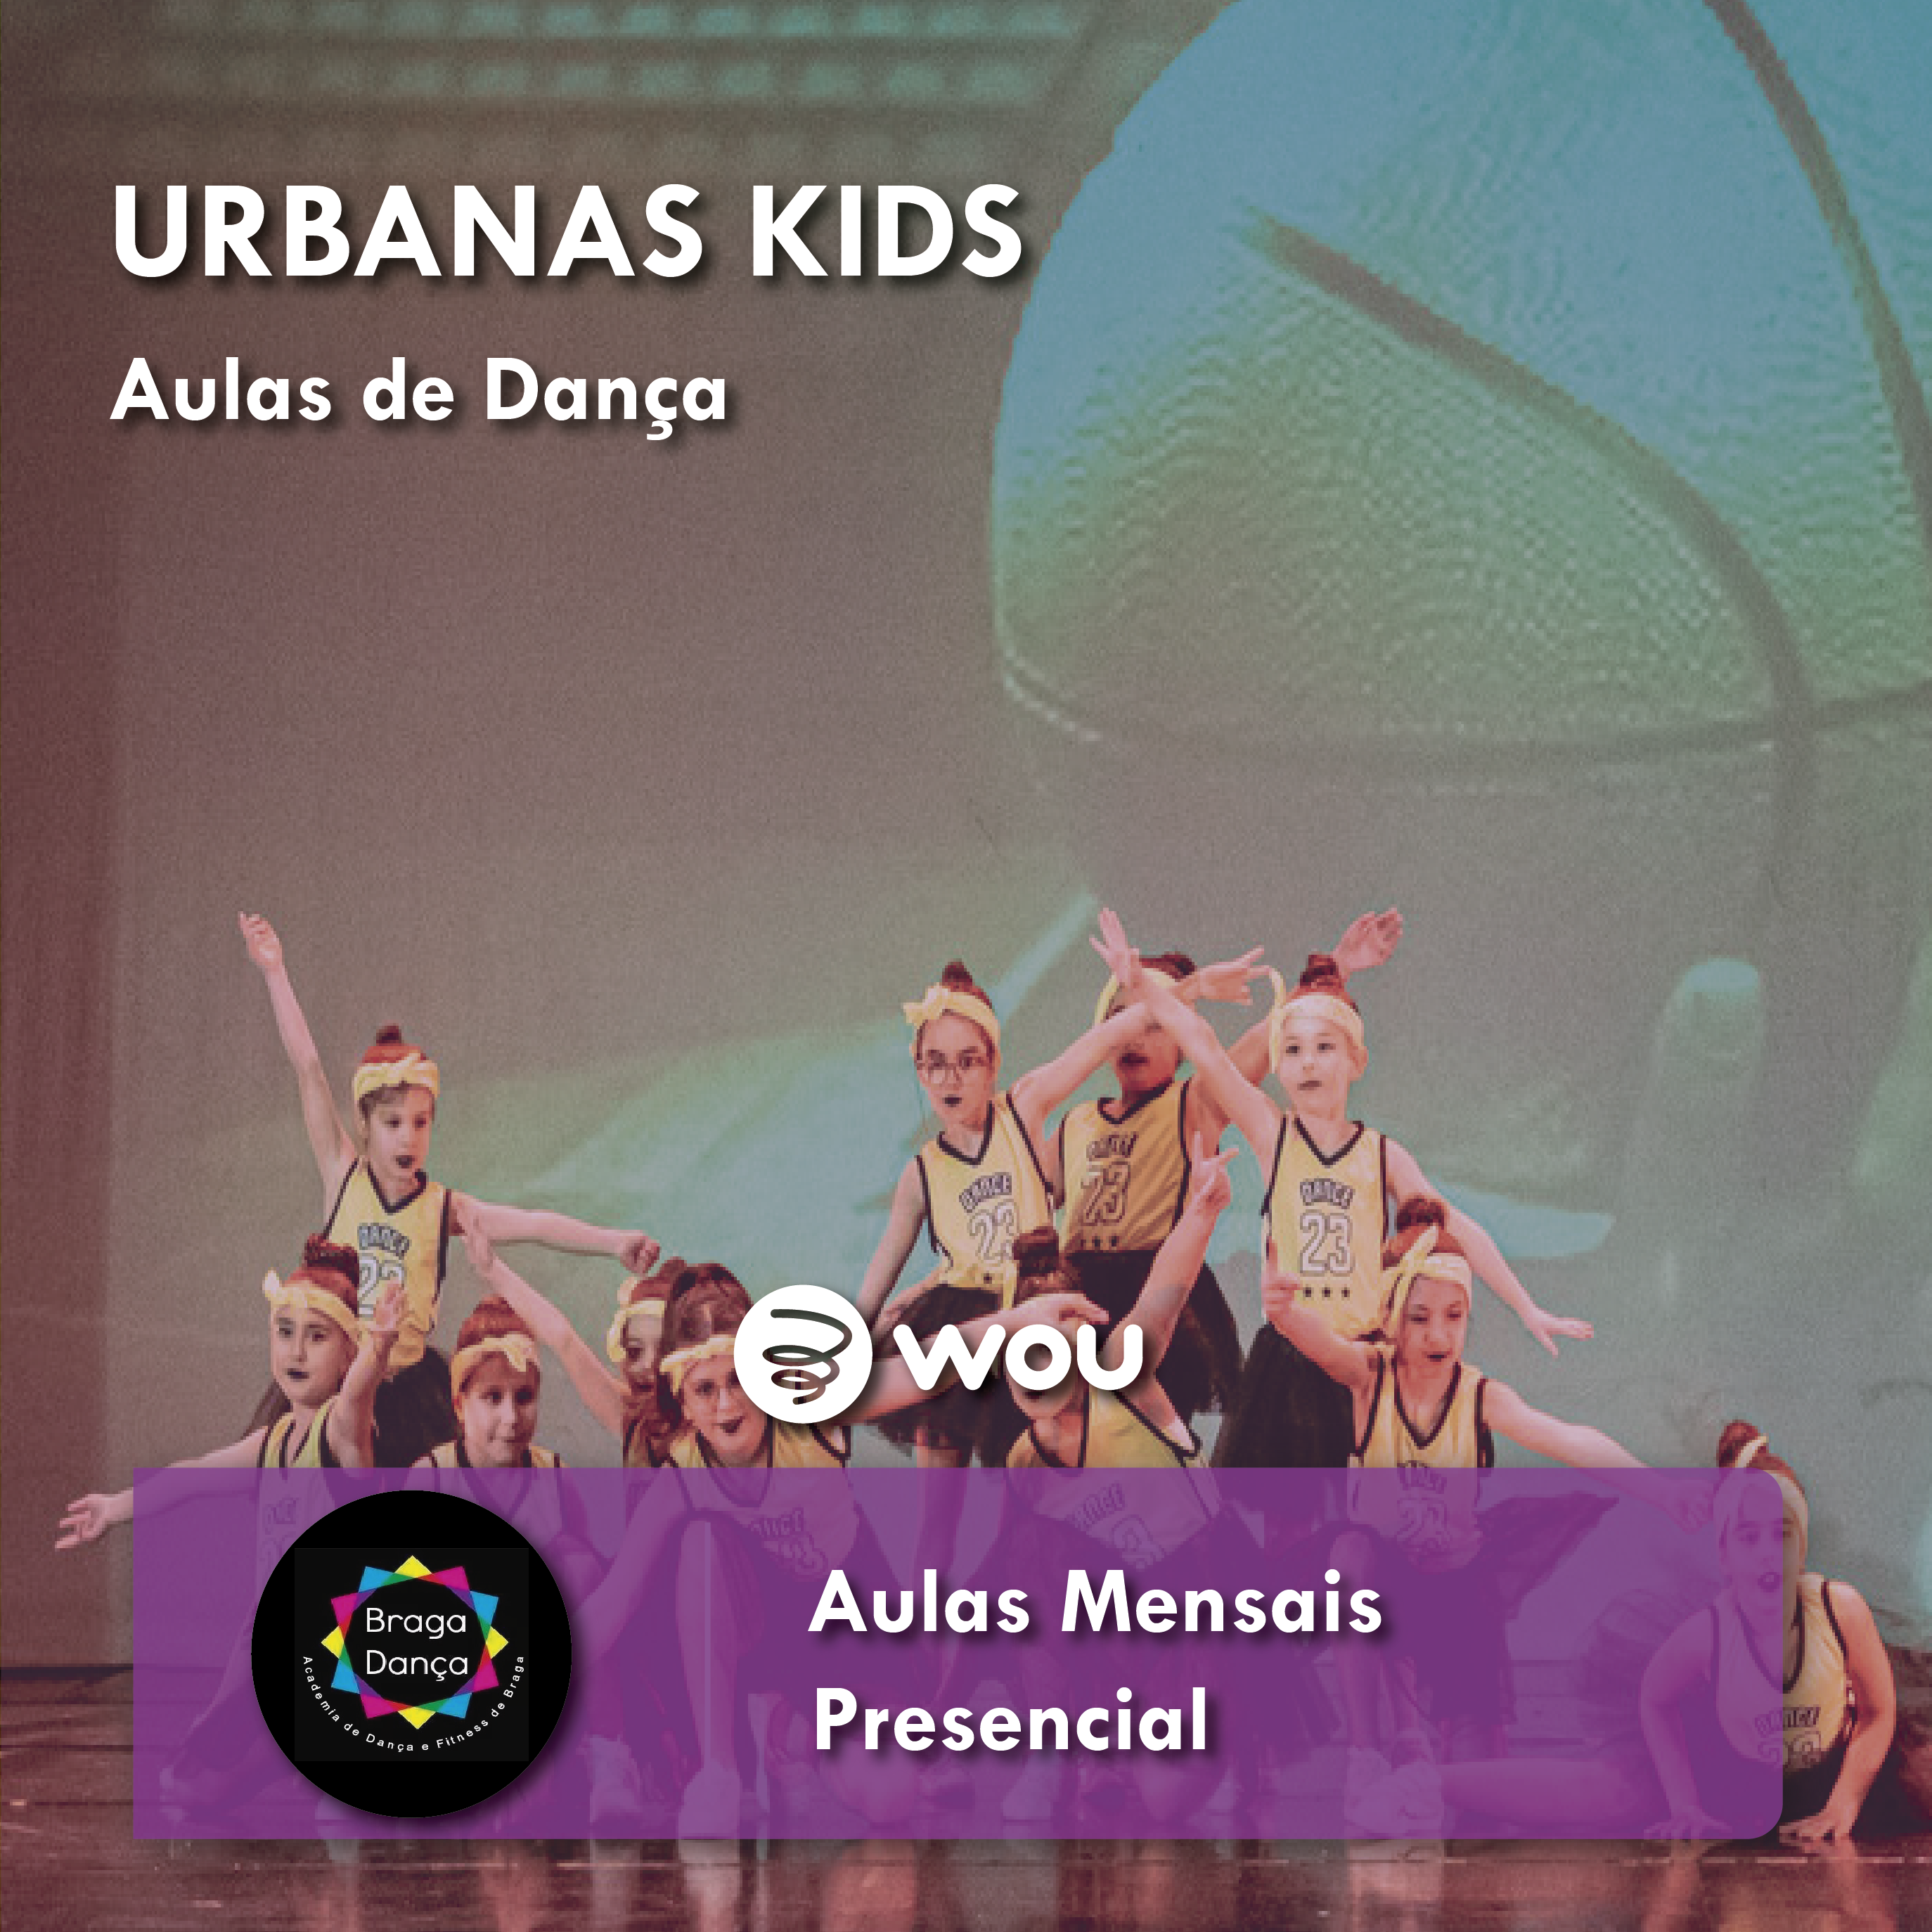 Aulas de Danças Urbanas Kids em Braga